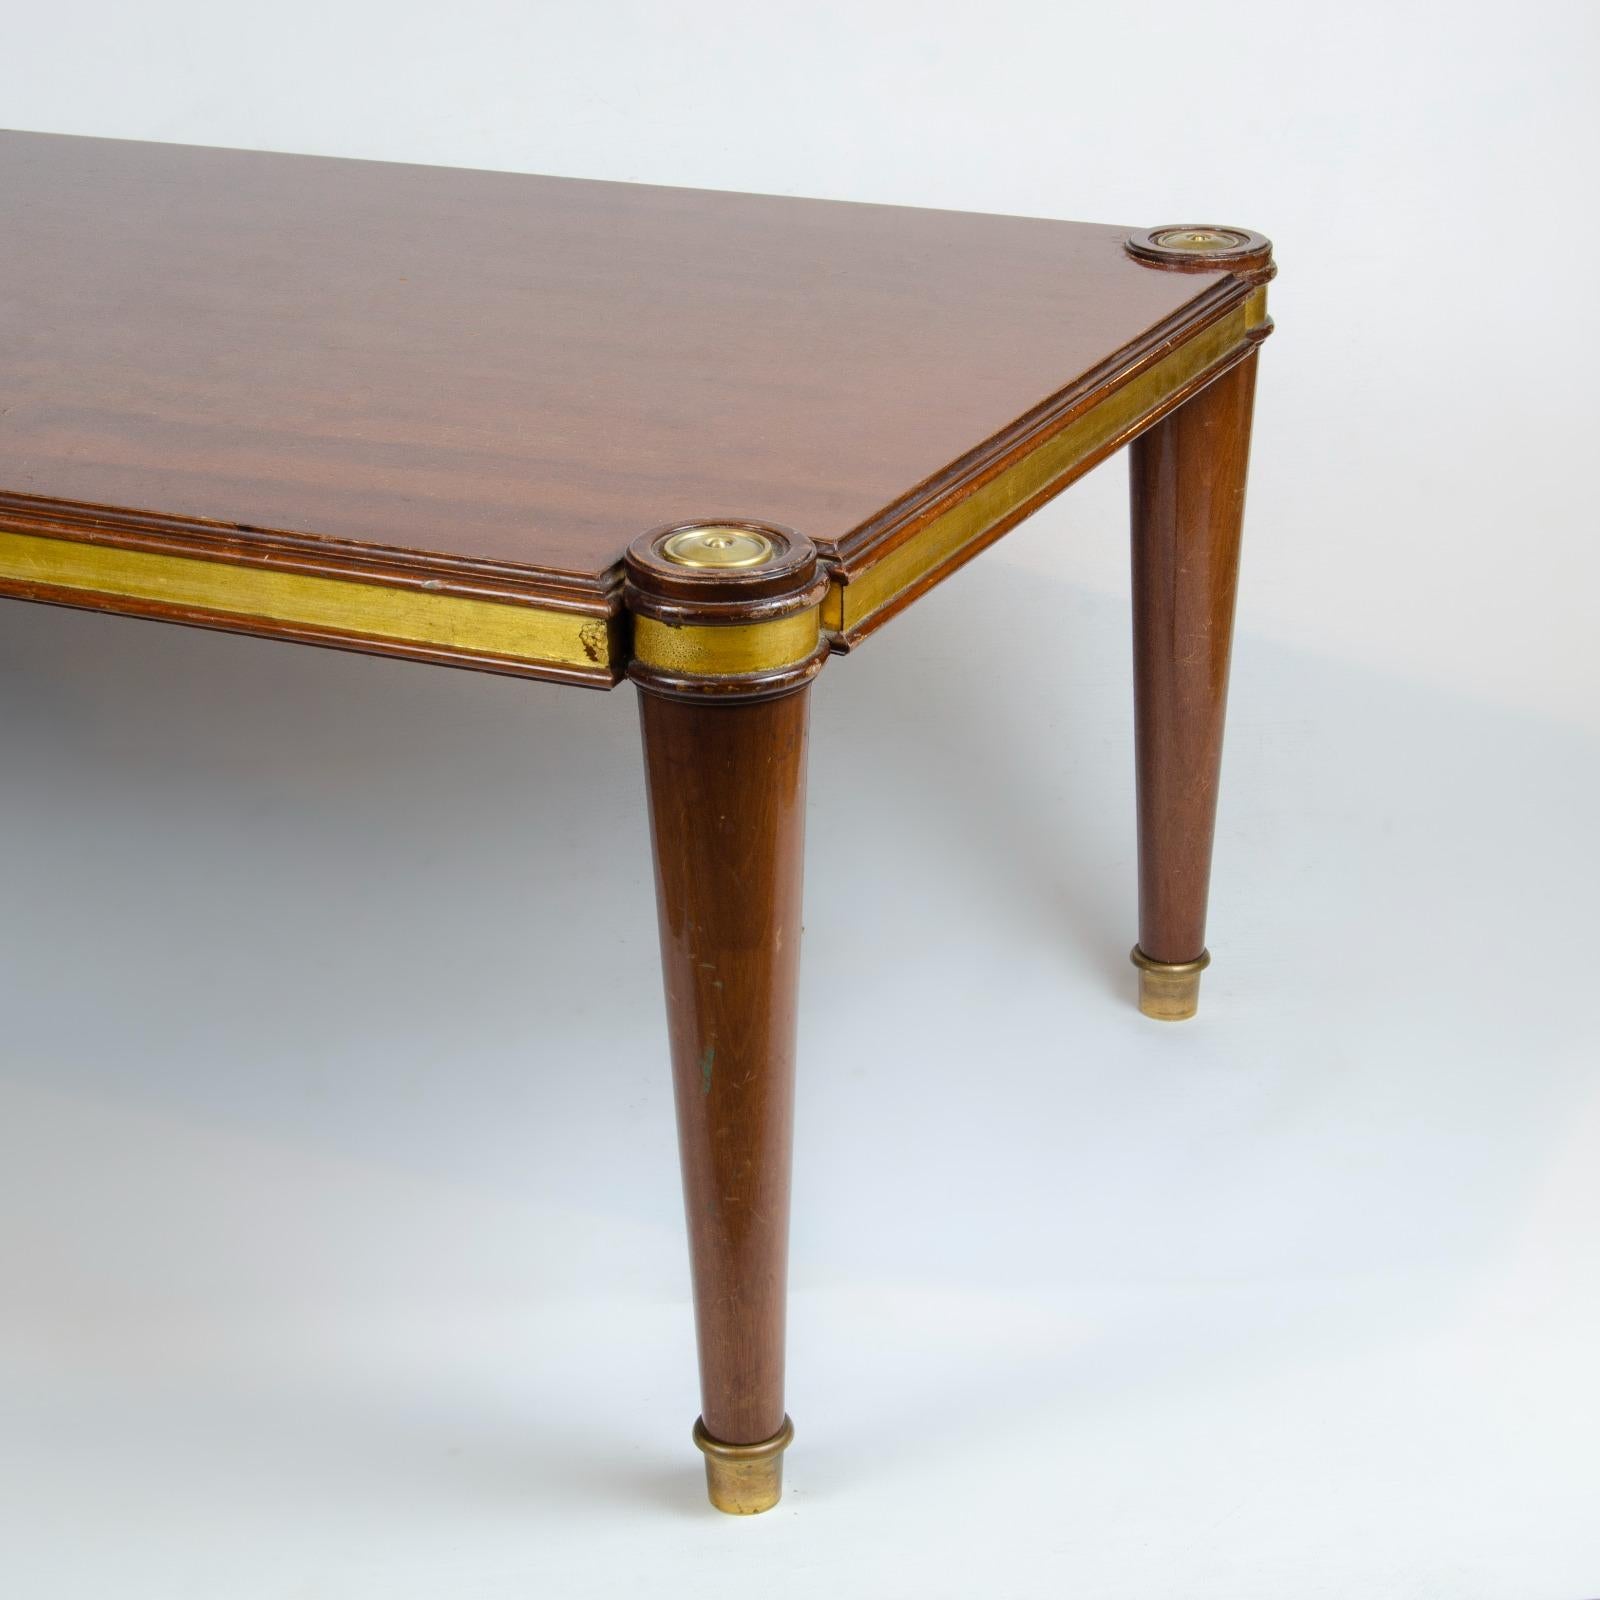 Cette table basse Art déco française provient de la Maison Jansen. La table des années 1940 est construite en chêne teinté avec des colliers de feuilles d'or au-dessus du pied. Le lit de table a un design décoratif des années 1940 et les pieds sont